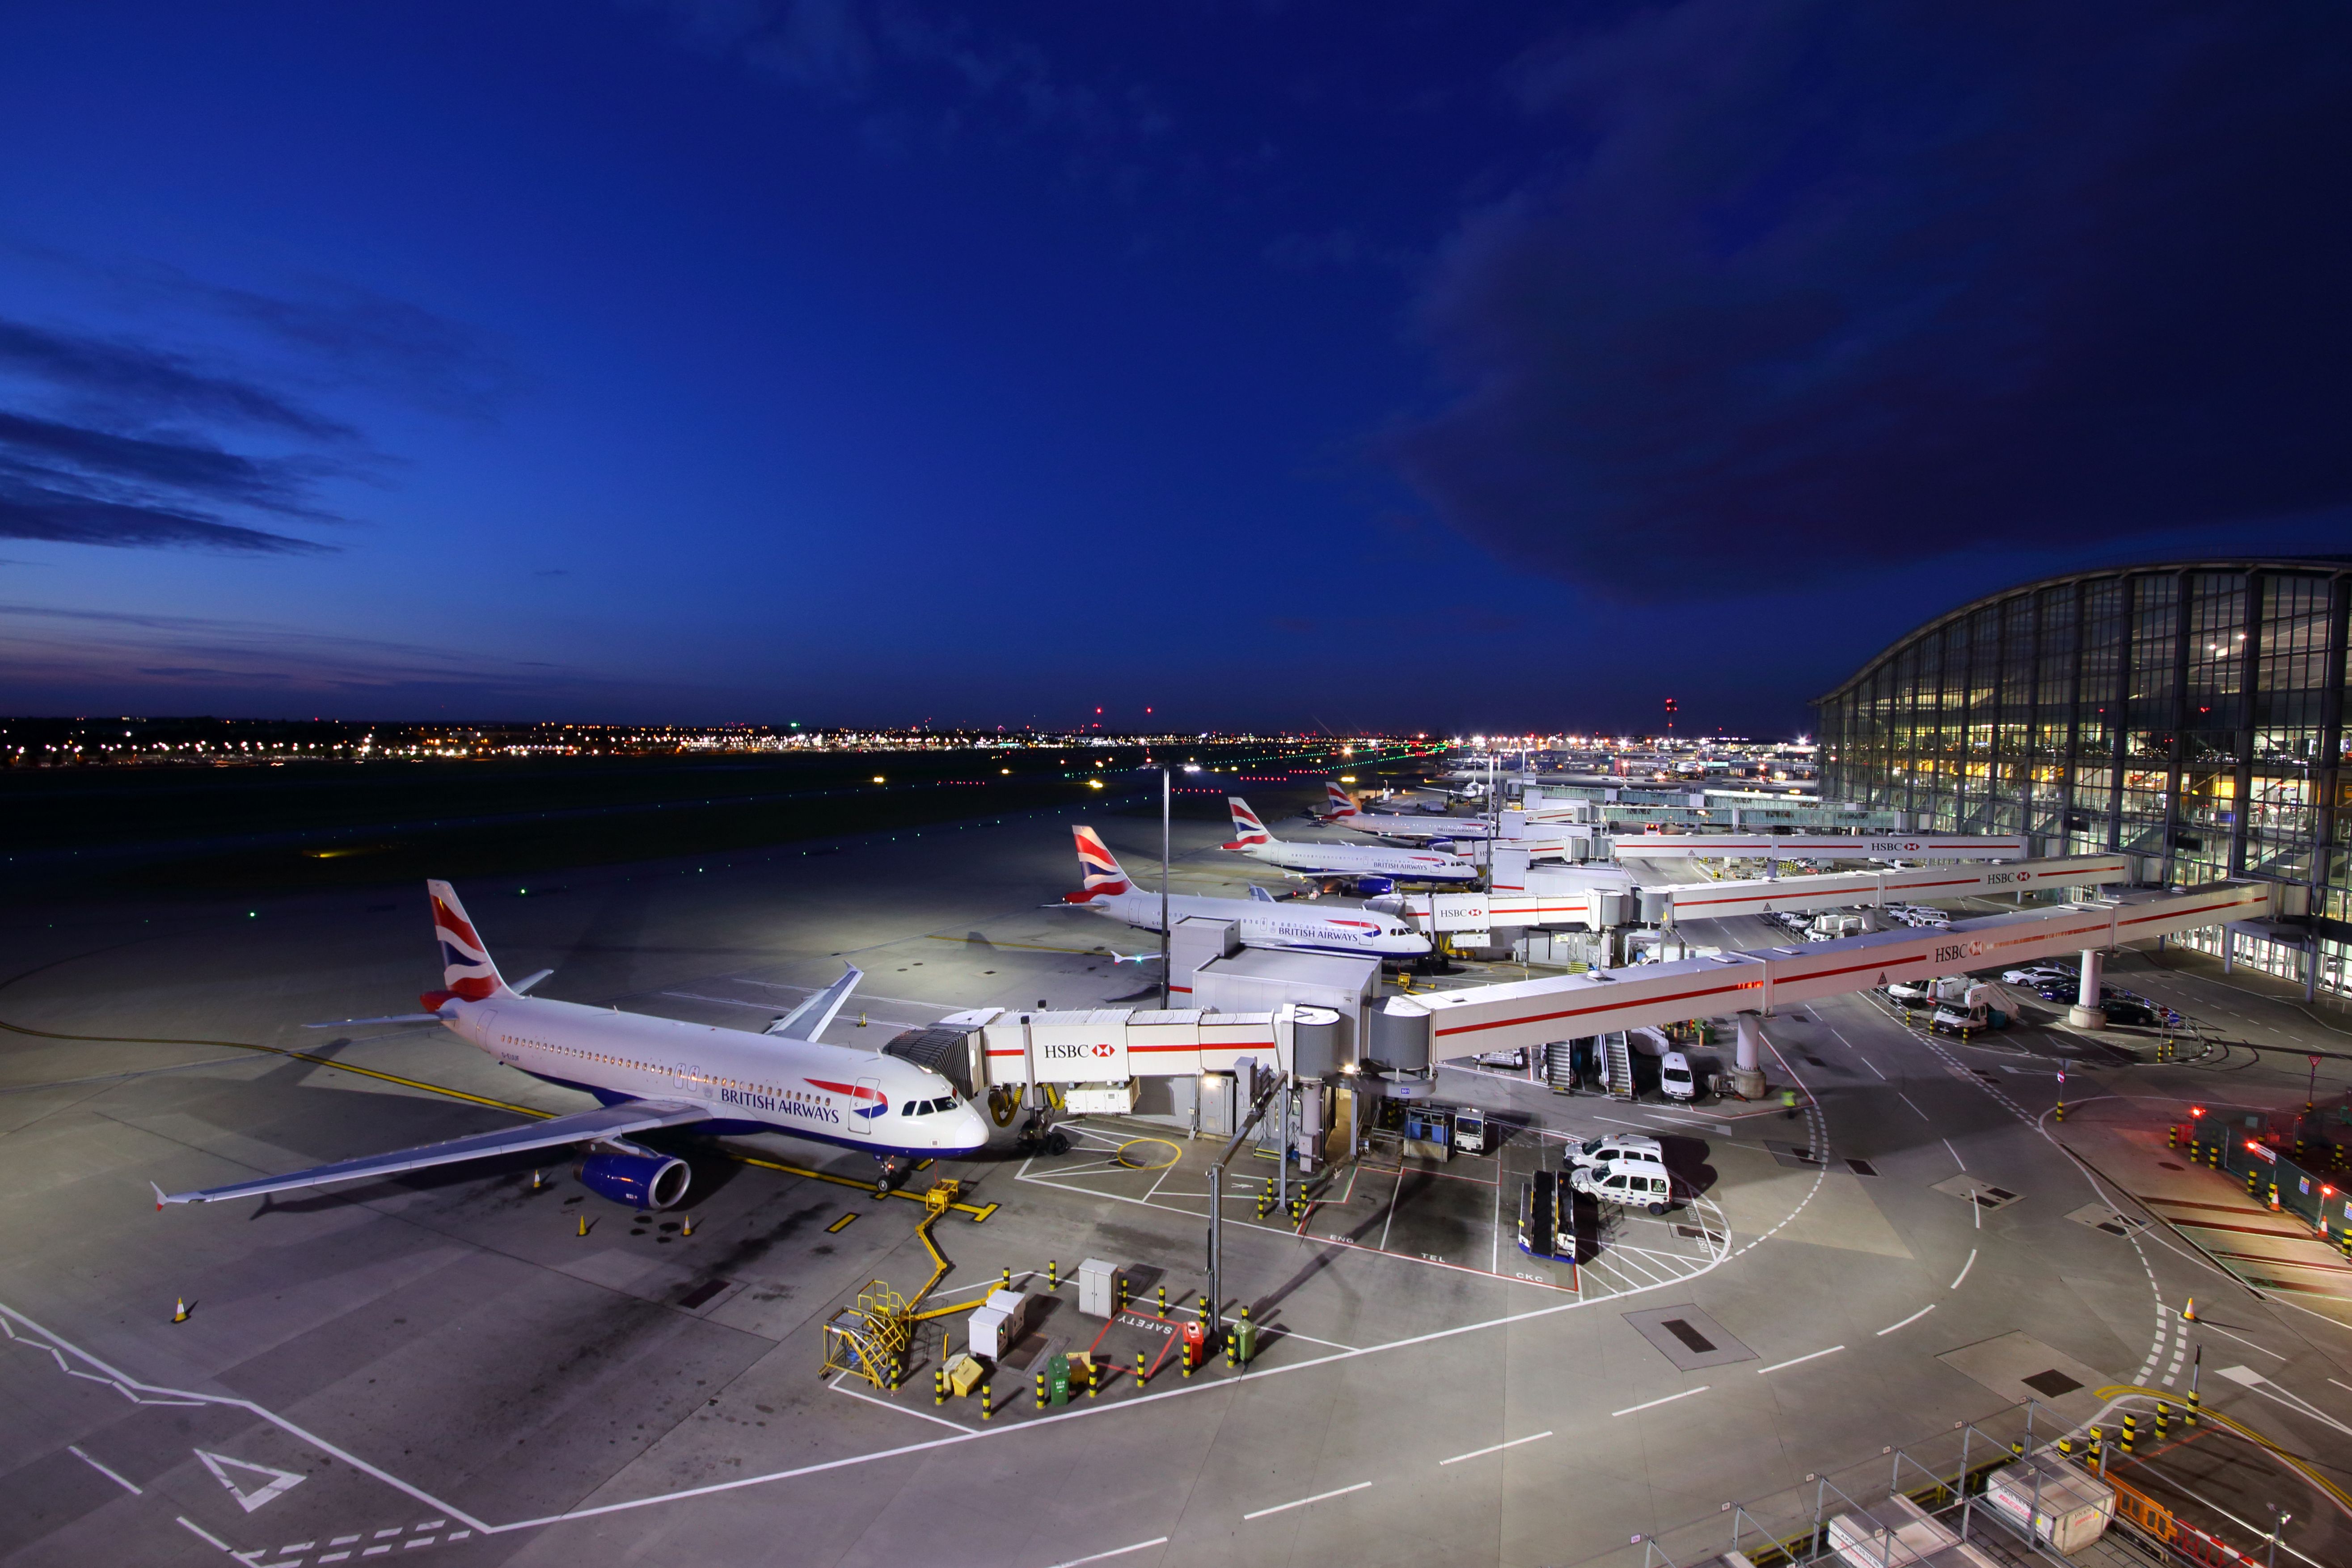 London Heathrow Airport British Airways A320s